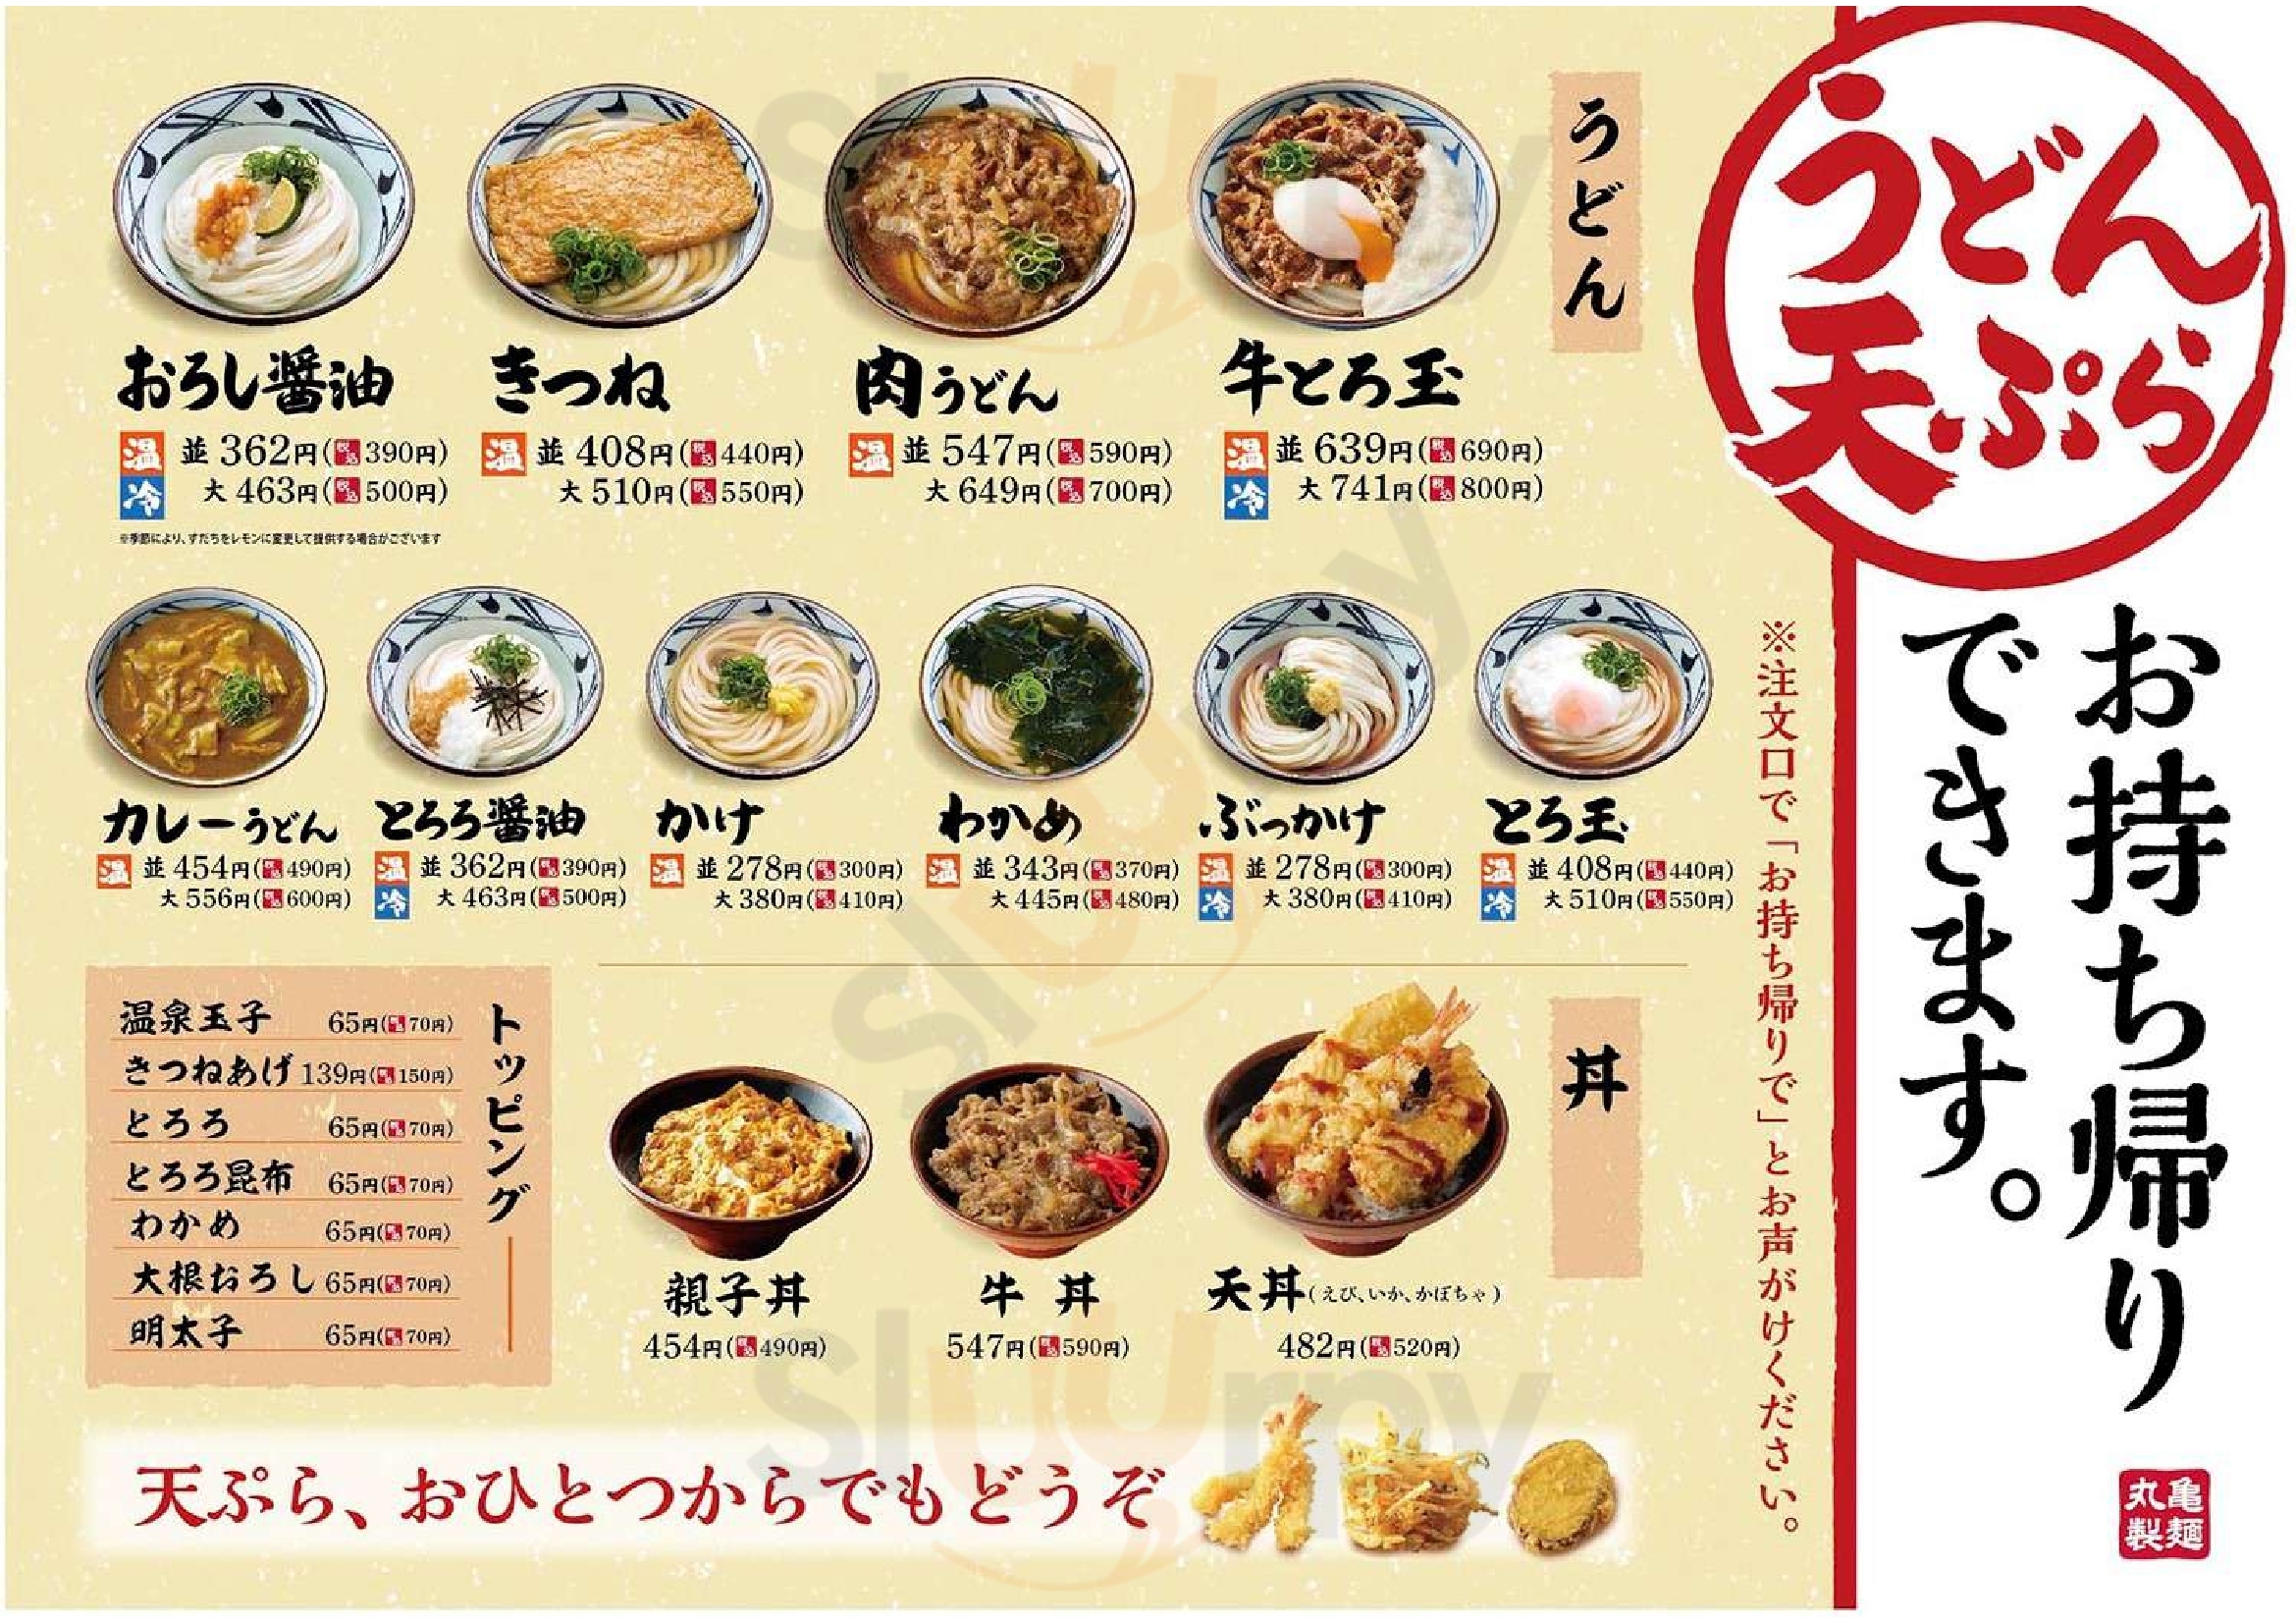 丸亀製麺若江東店 東大阪市 Menu - 1